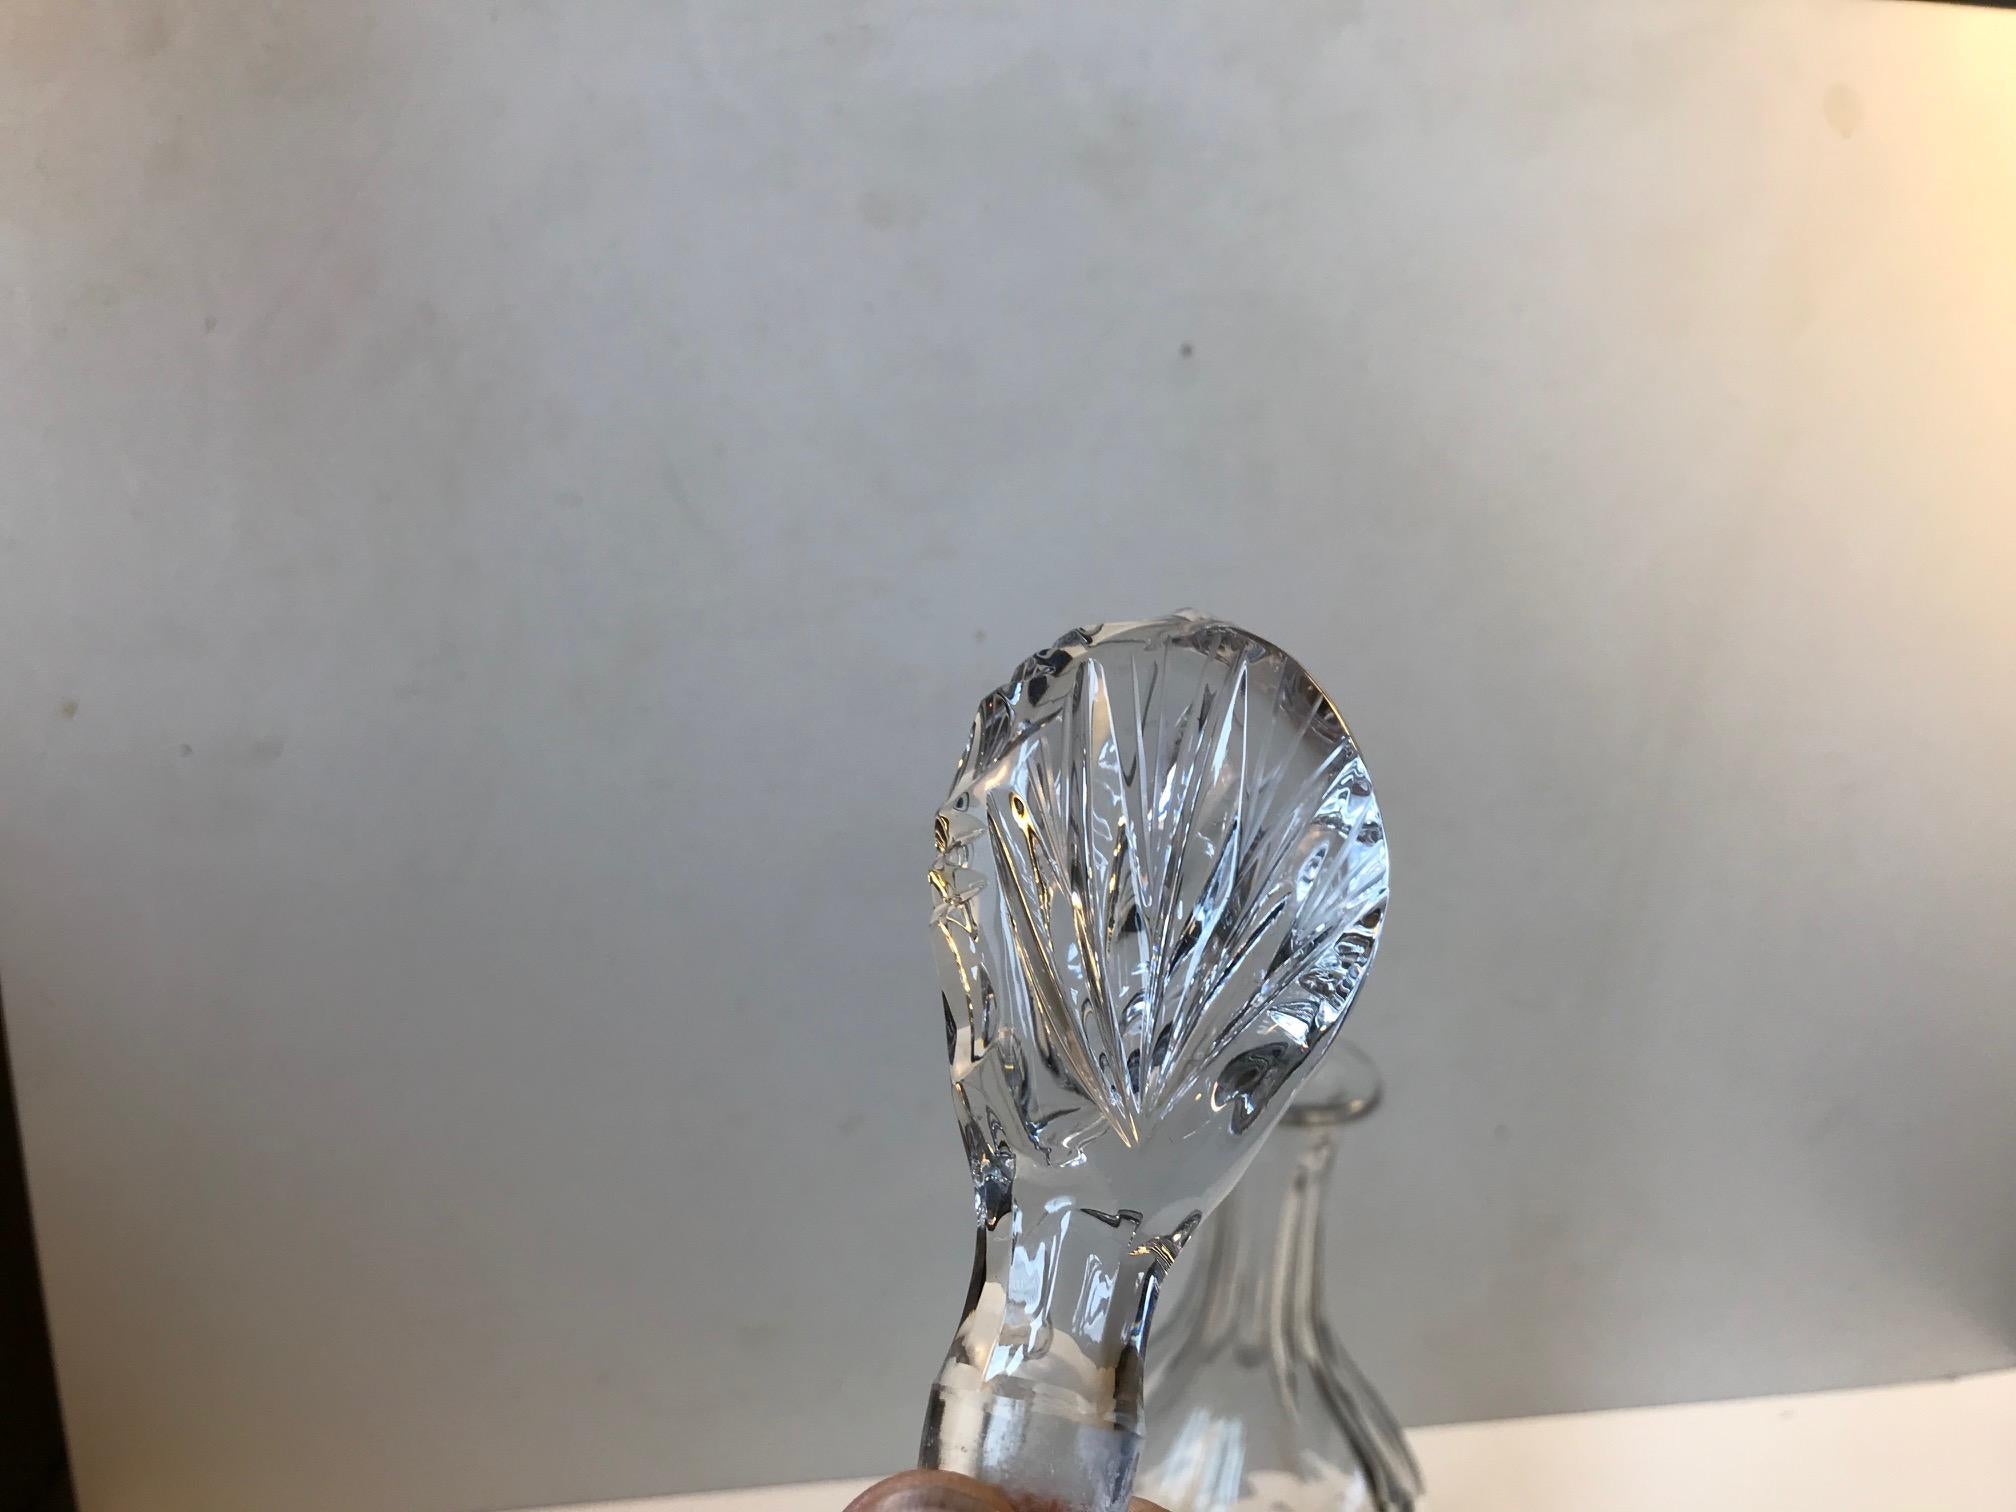 baccarat crystal decanter vintage